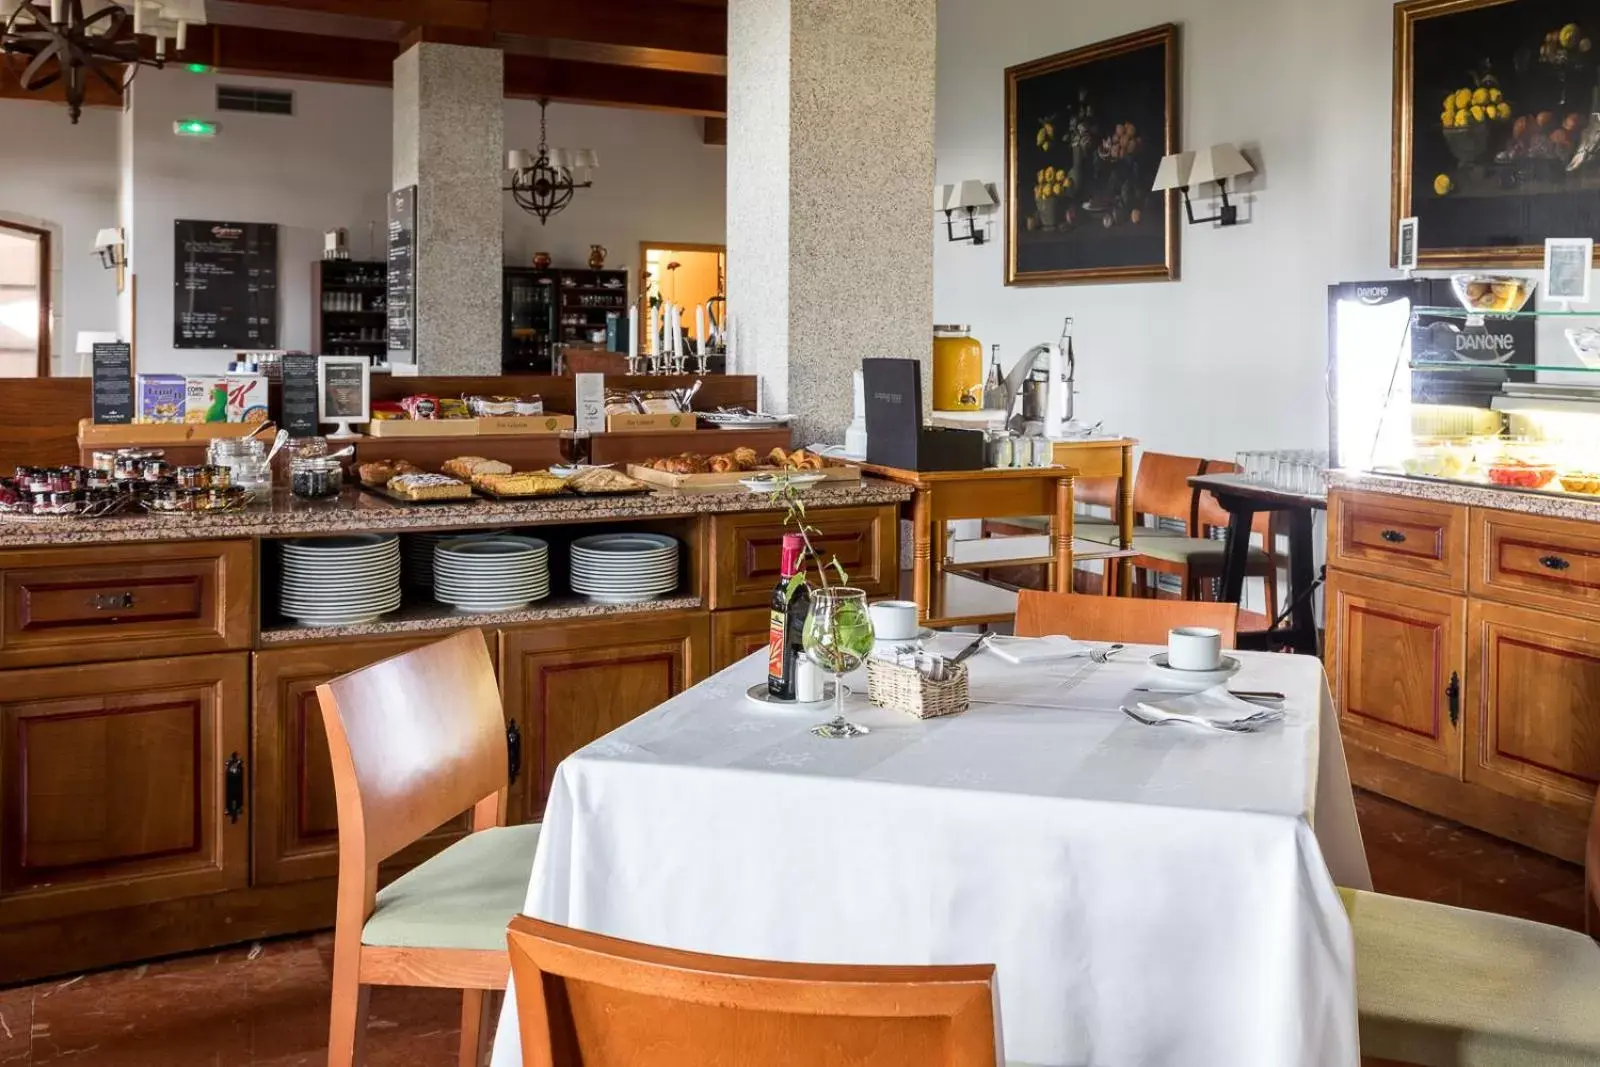 Banquet/Function facilities, Restaurant/Places to Eat in Parador de Tui